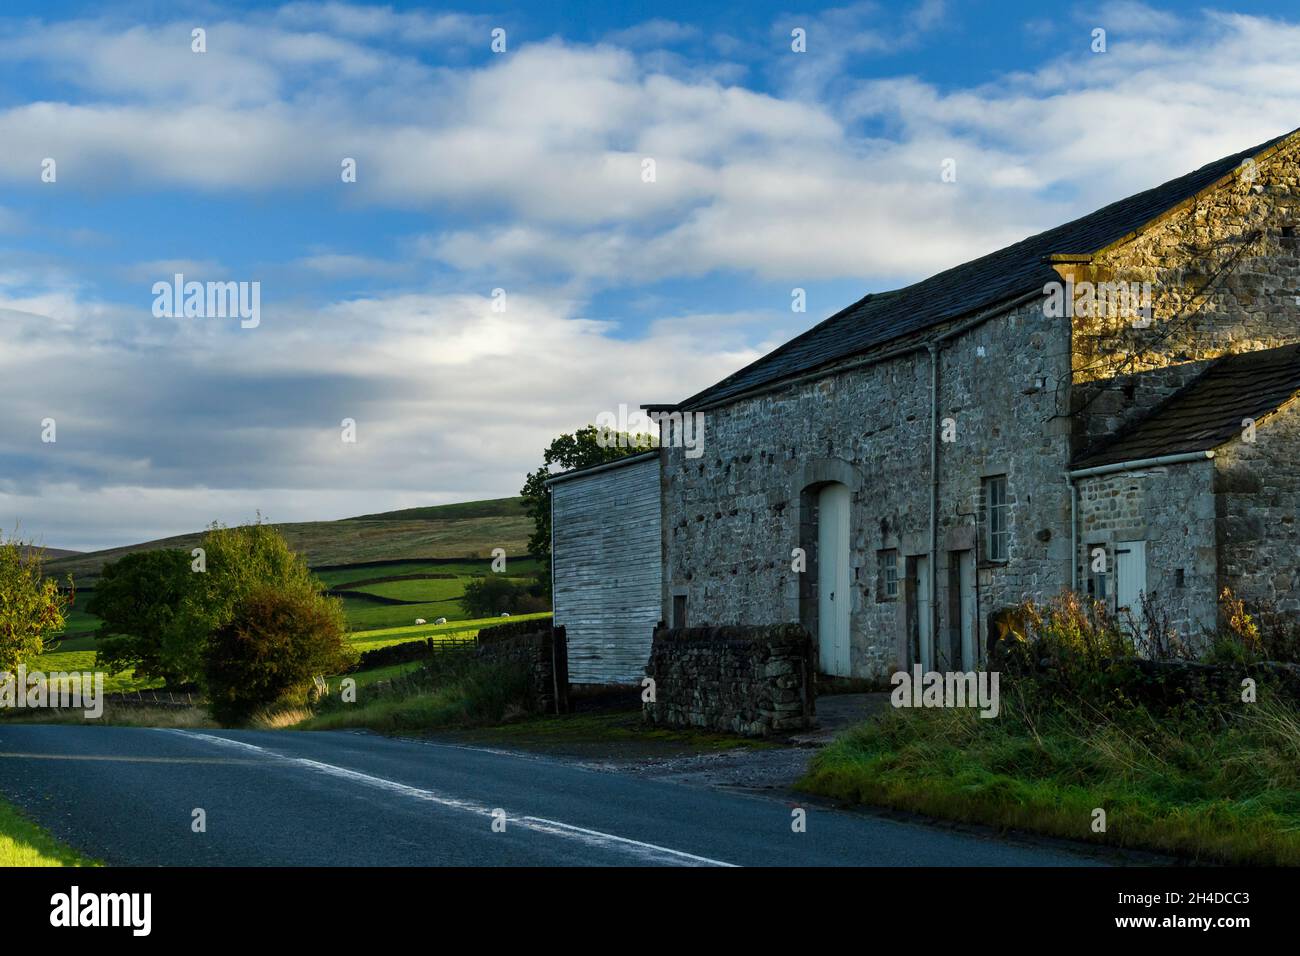 Ancienne grange en pierre sur le côté de la campagne calme B6160 route, collines ondoyantes et moutons dans les champs de ferme ensoleillées sous le ciel bleu - Yorkshire Dales, Angleterre, Royaume-Uni. Banque D'Images